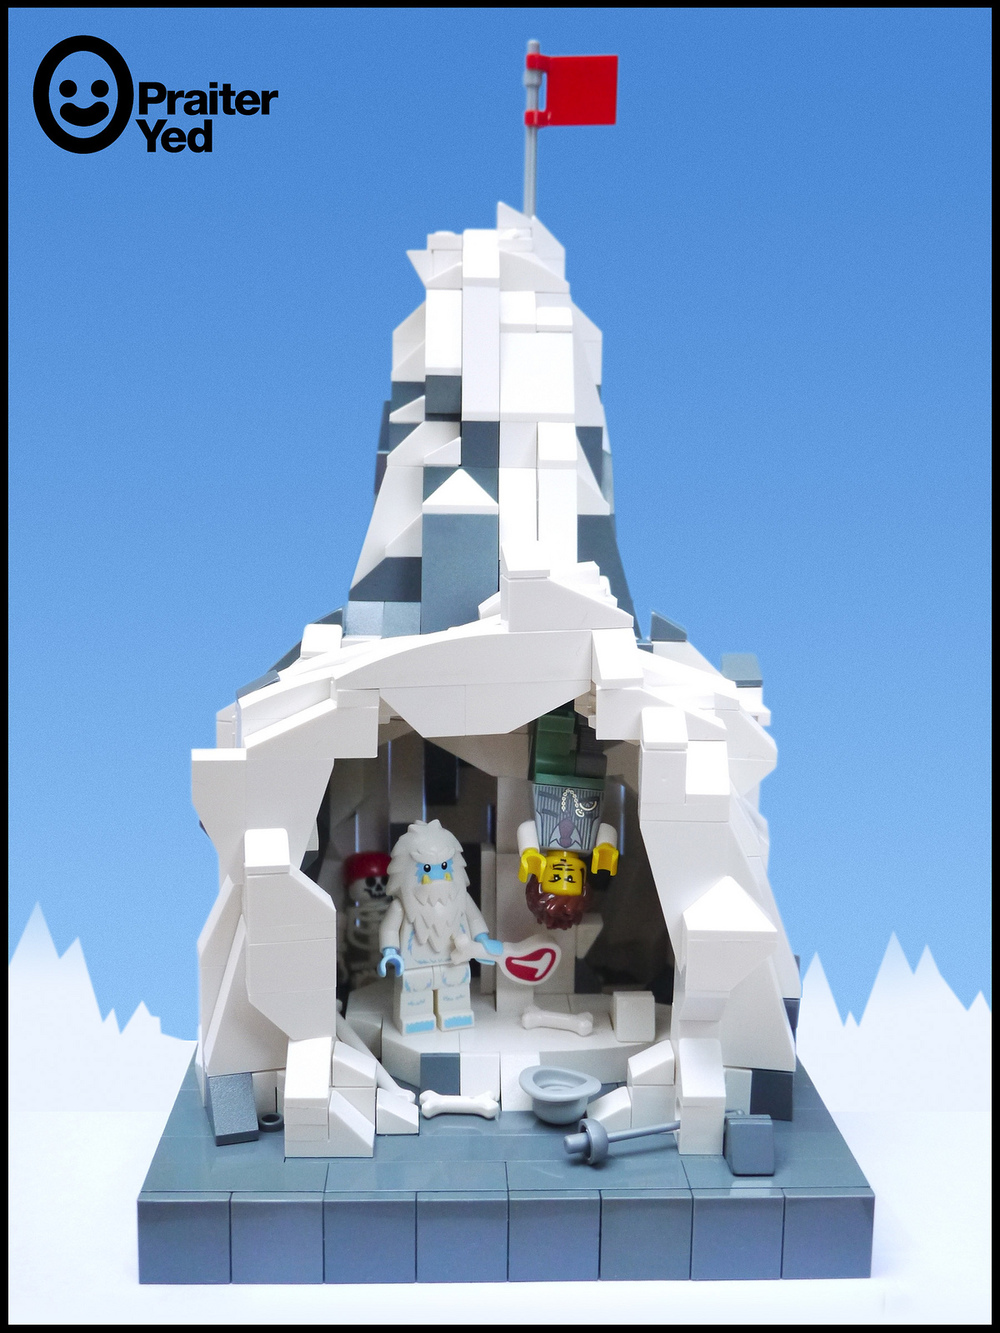 Yeti Cave BrickNerd - All things LEGO and LEGO fan community